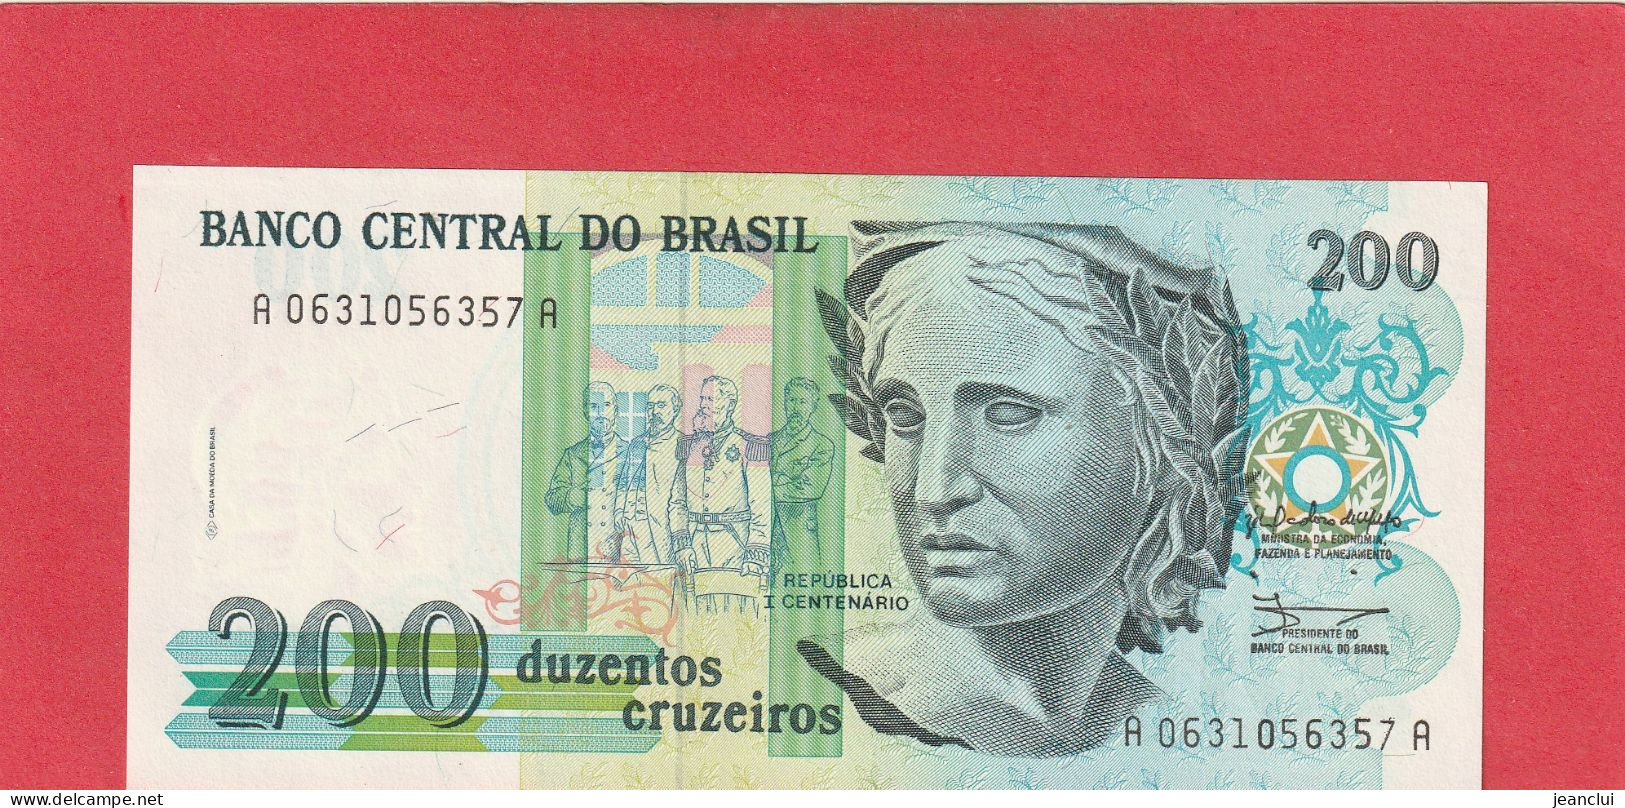 BANCO CENTRAL DO BRASIL .  200 CRUZEIROS  .  N°  A 0631056357 A  .  2 SCANNES  .  ETAT LUXE / UNC - Brazil